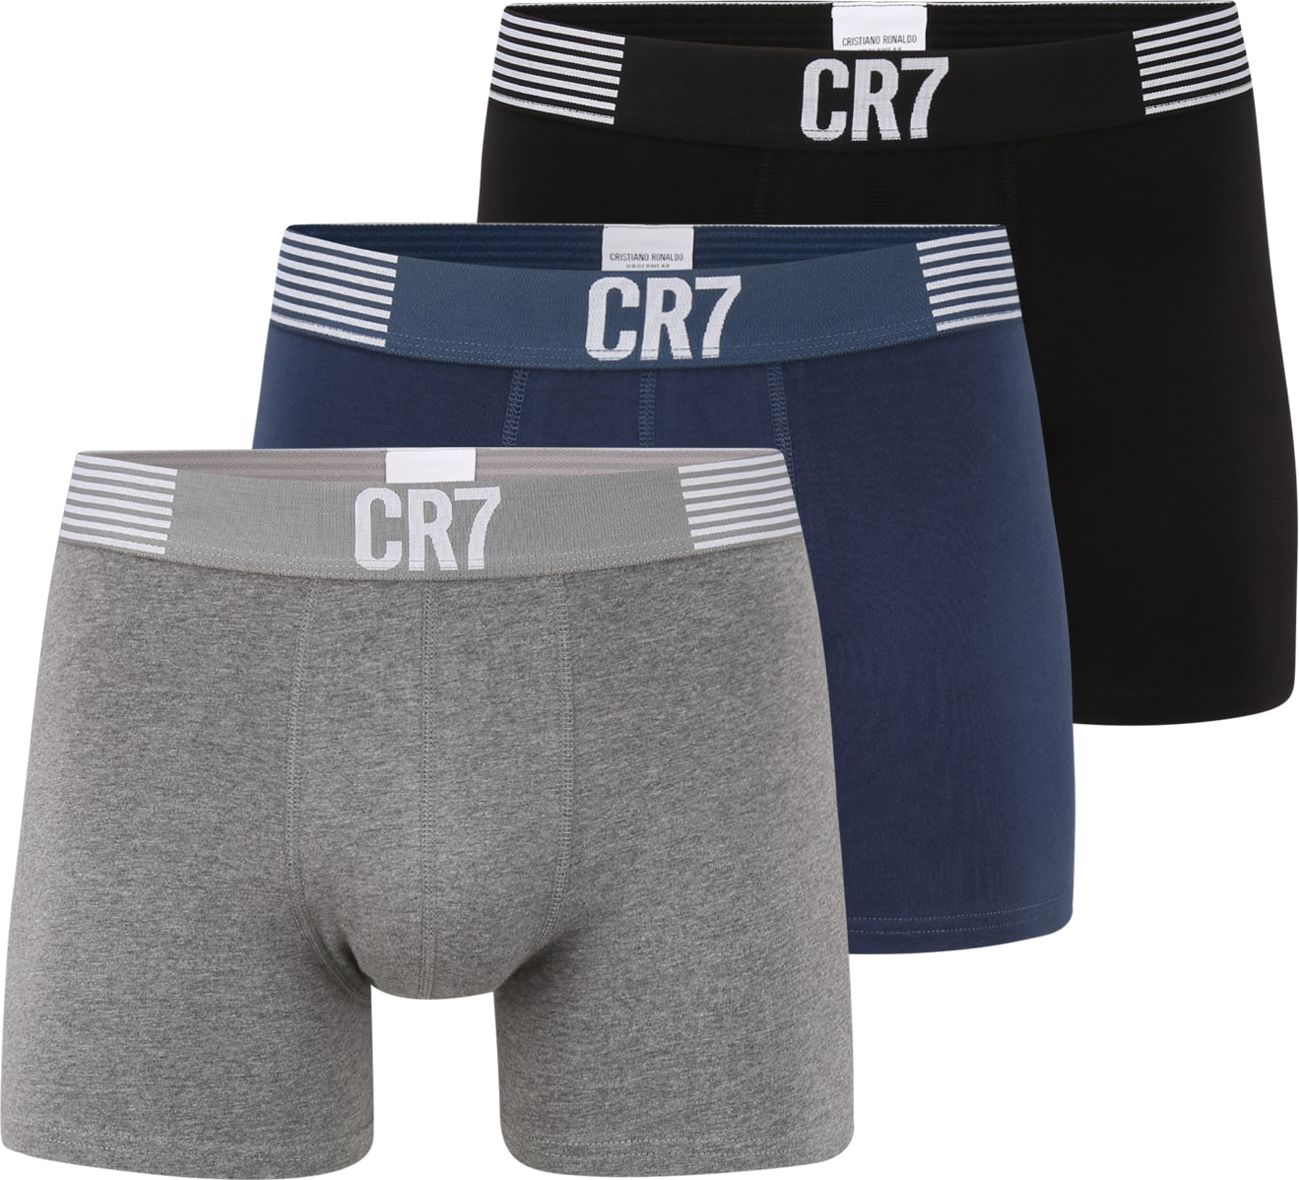 CR7 - Cristiano Ronaldo Boxerky marine modrá / šedý melír / černá / bílá